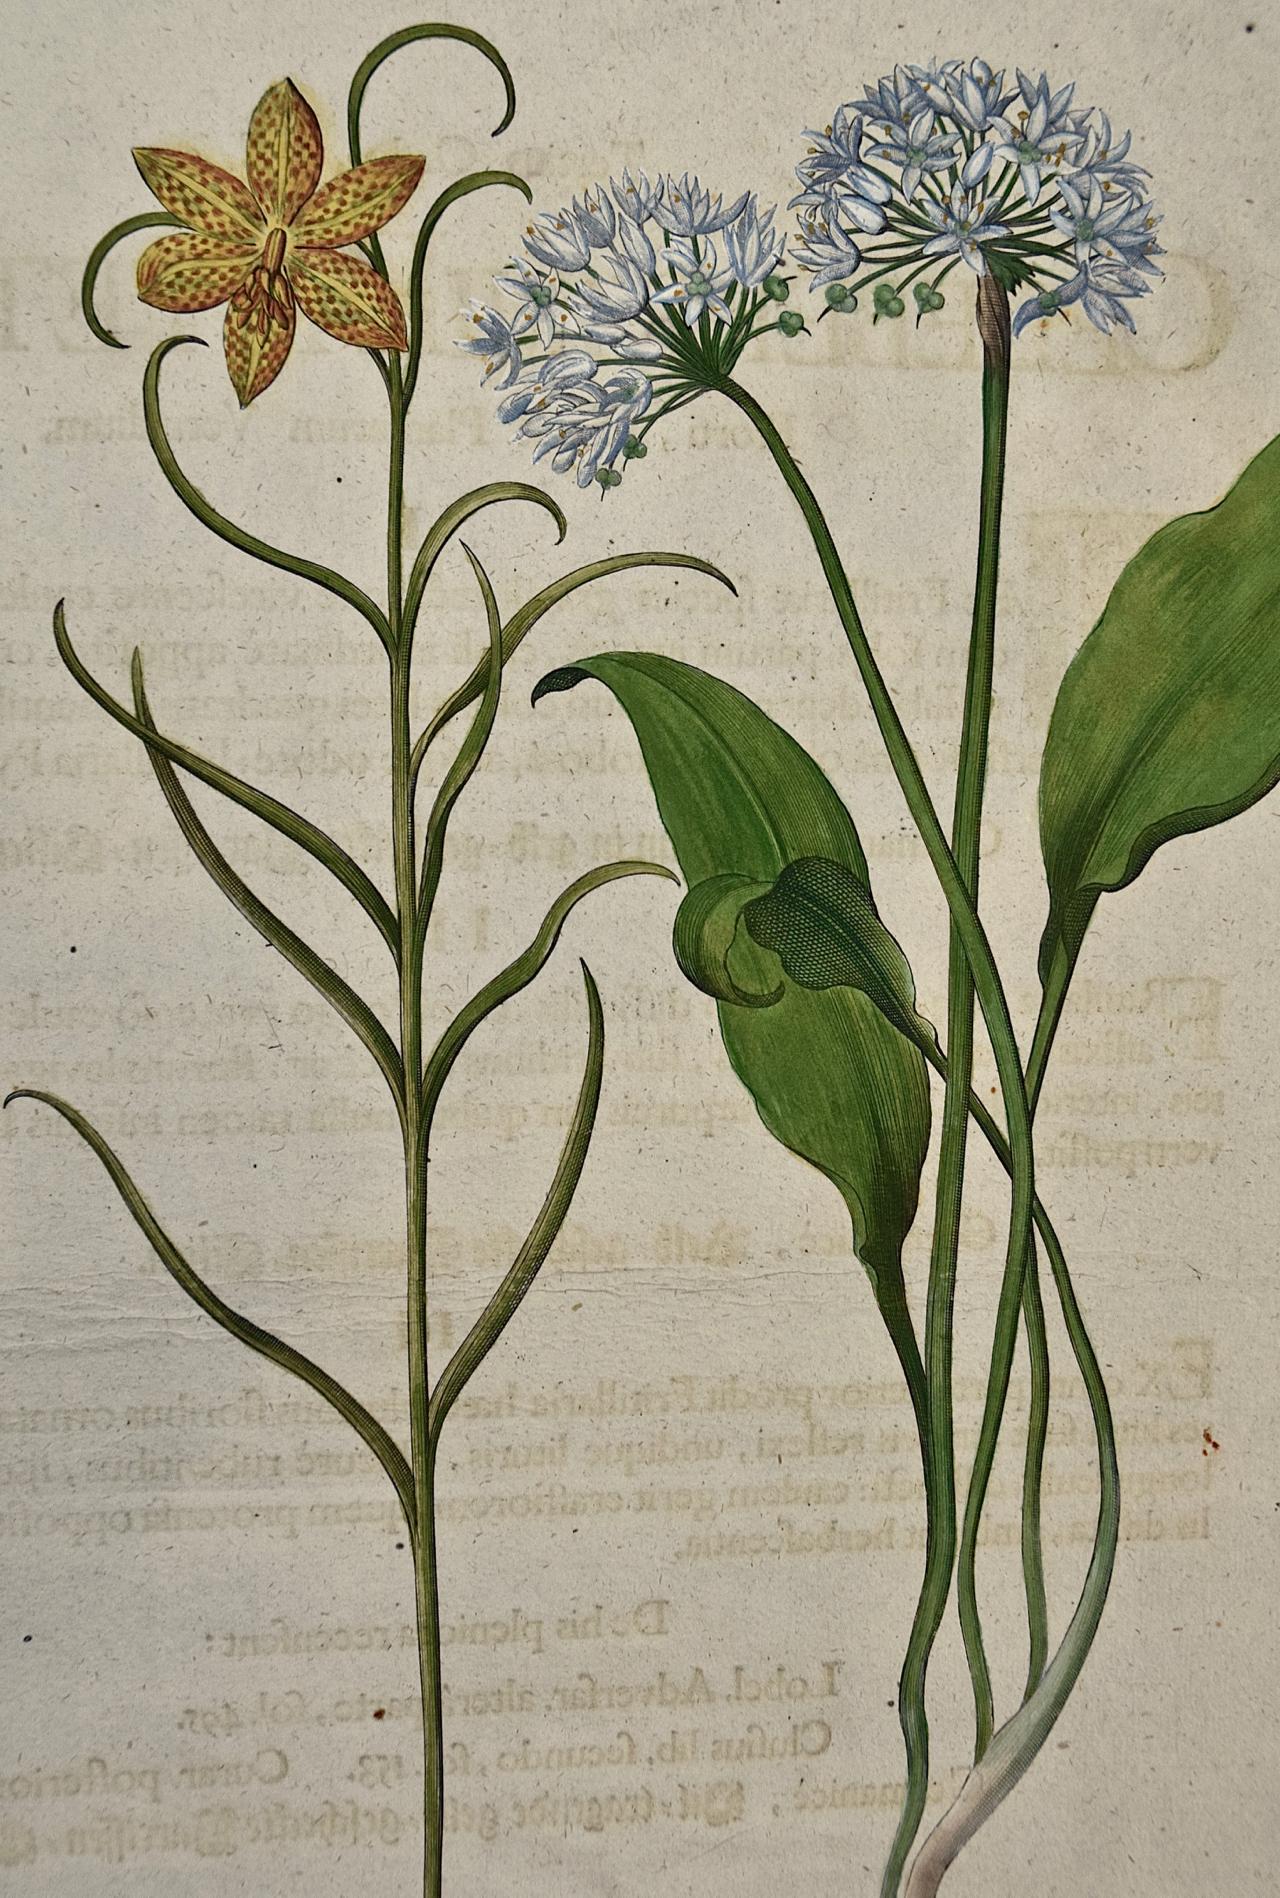 Besler Handkolorierte botanische Gravur von blühenden Tulpen und Wildgirlandpflanzen  (Akademisch), Print, von Basilius Besler